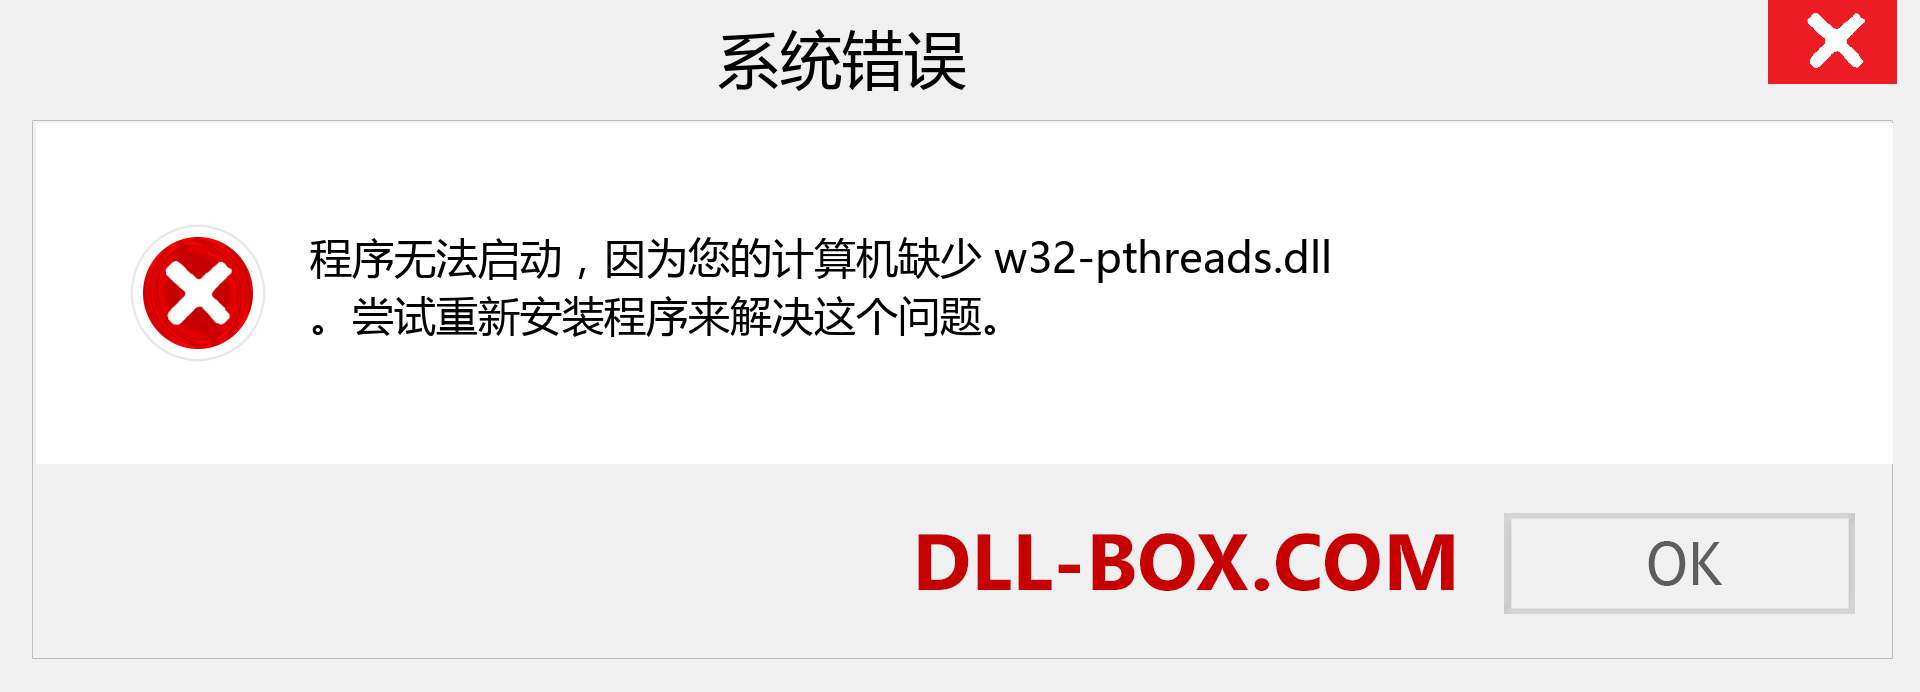 w32-pthreads.dll 文件丢失？。 适用于 Windows 7、8、10 的下载 - 修复 Windows、照片、图像上的 w32-pthreads dll 丢失错误